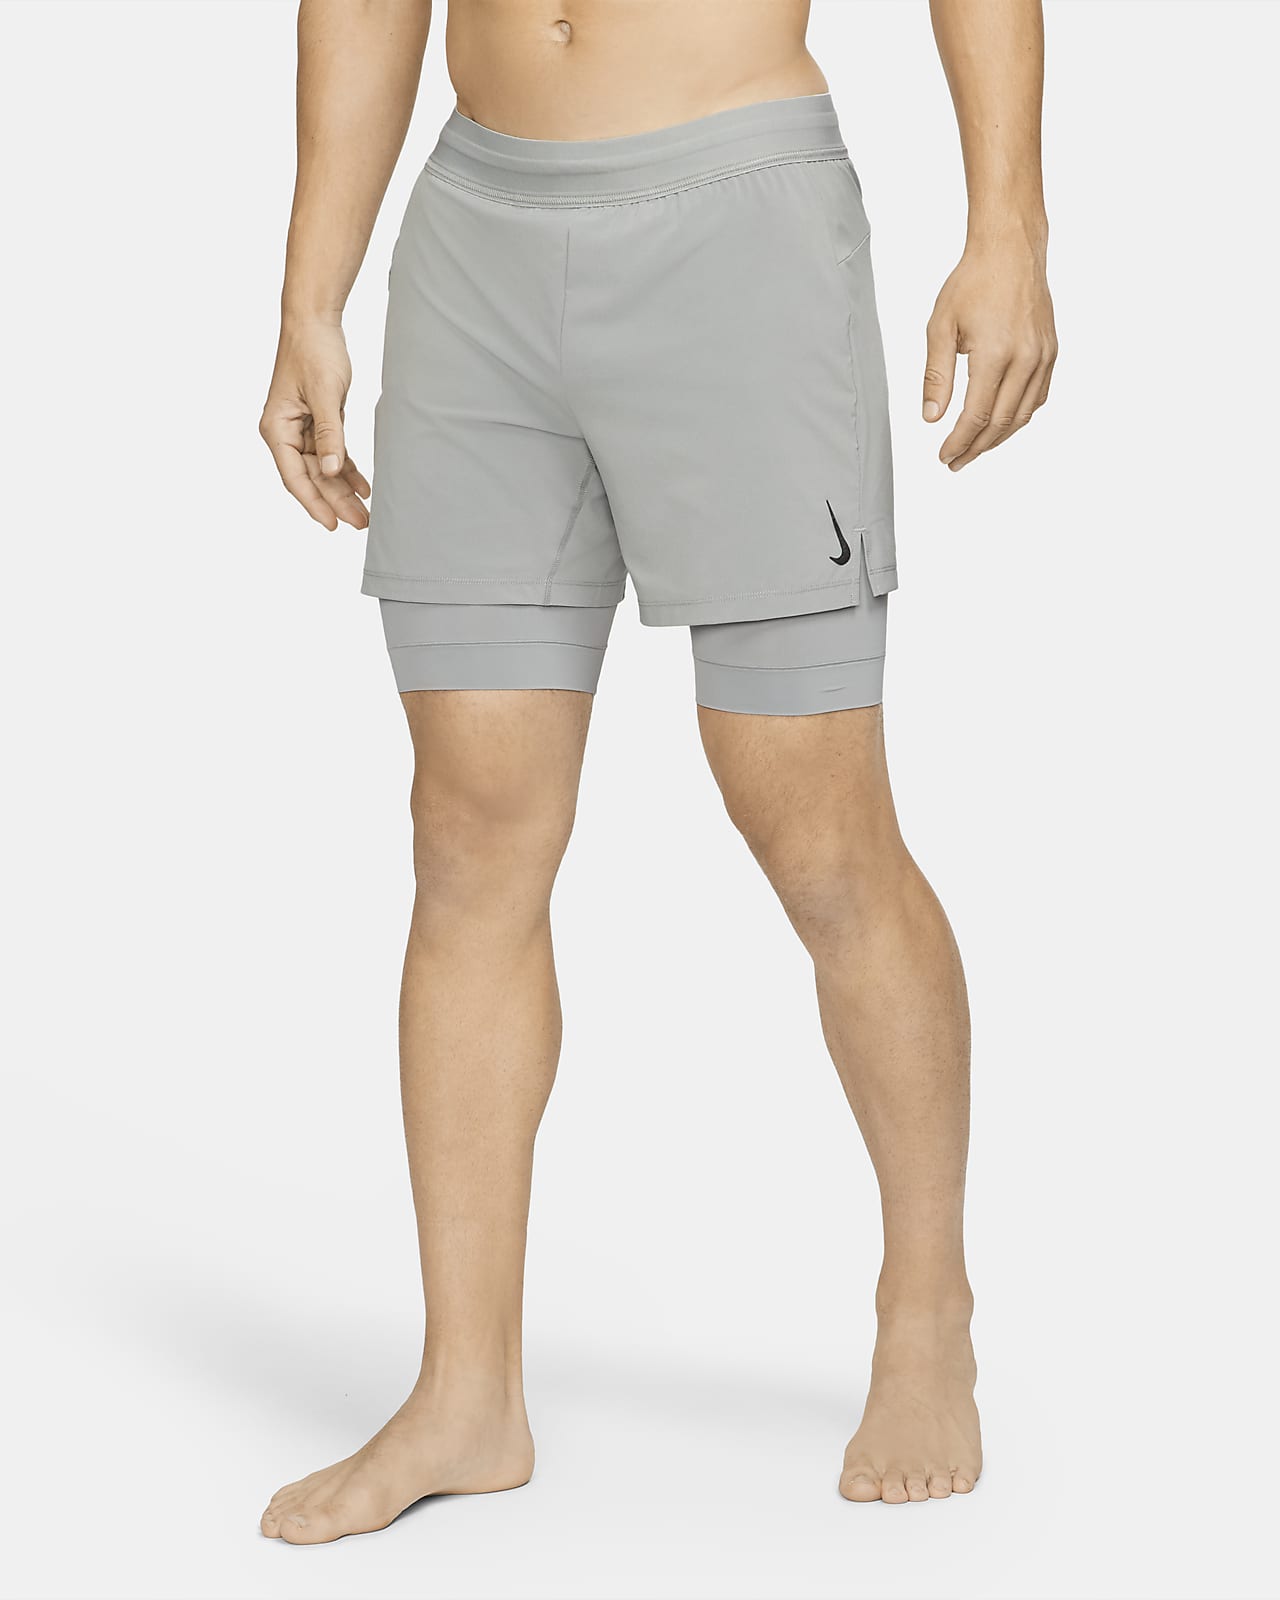 nike shorts with underlayer